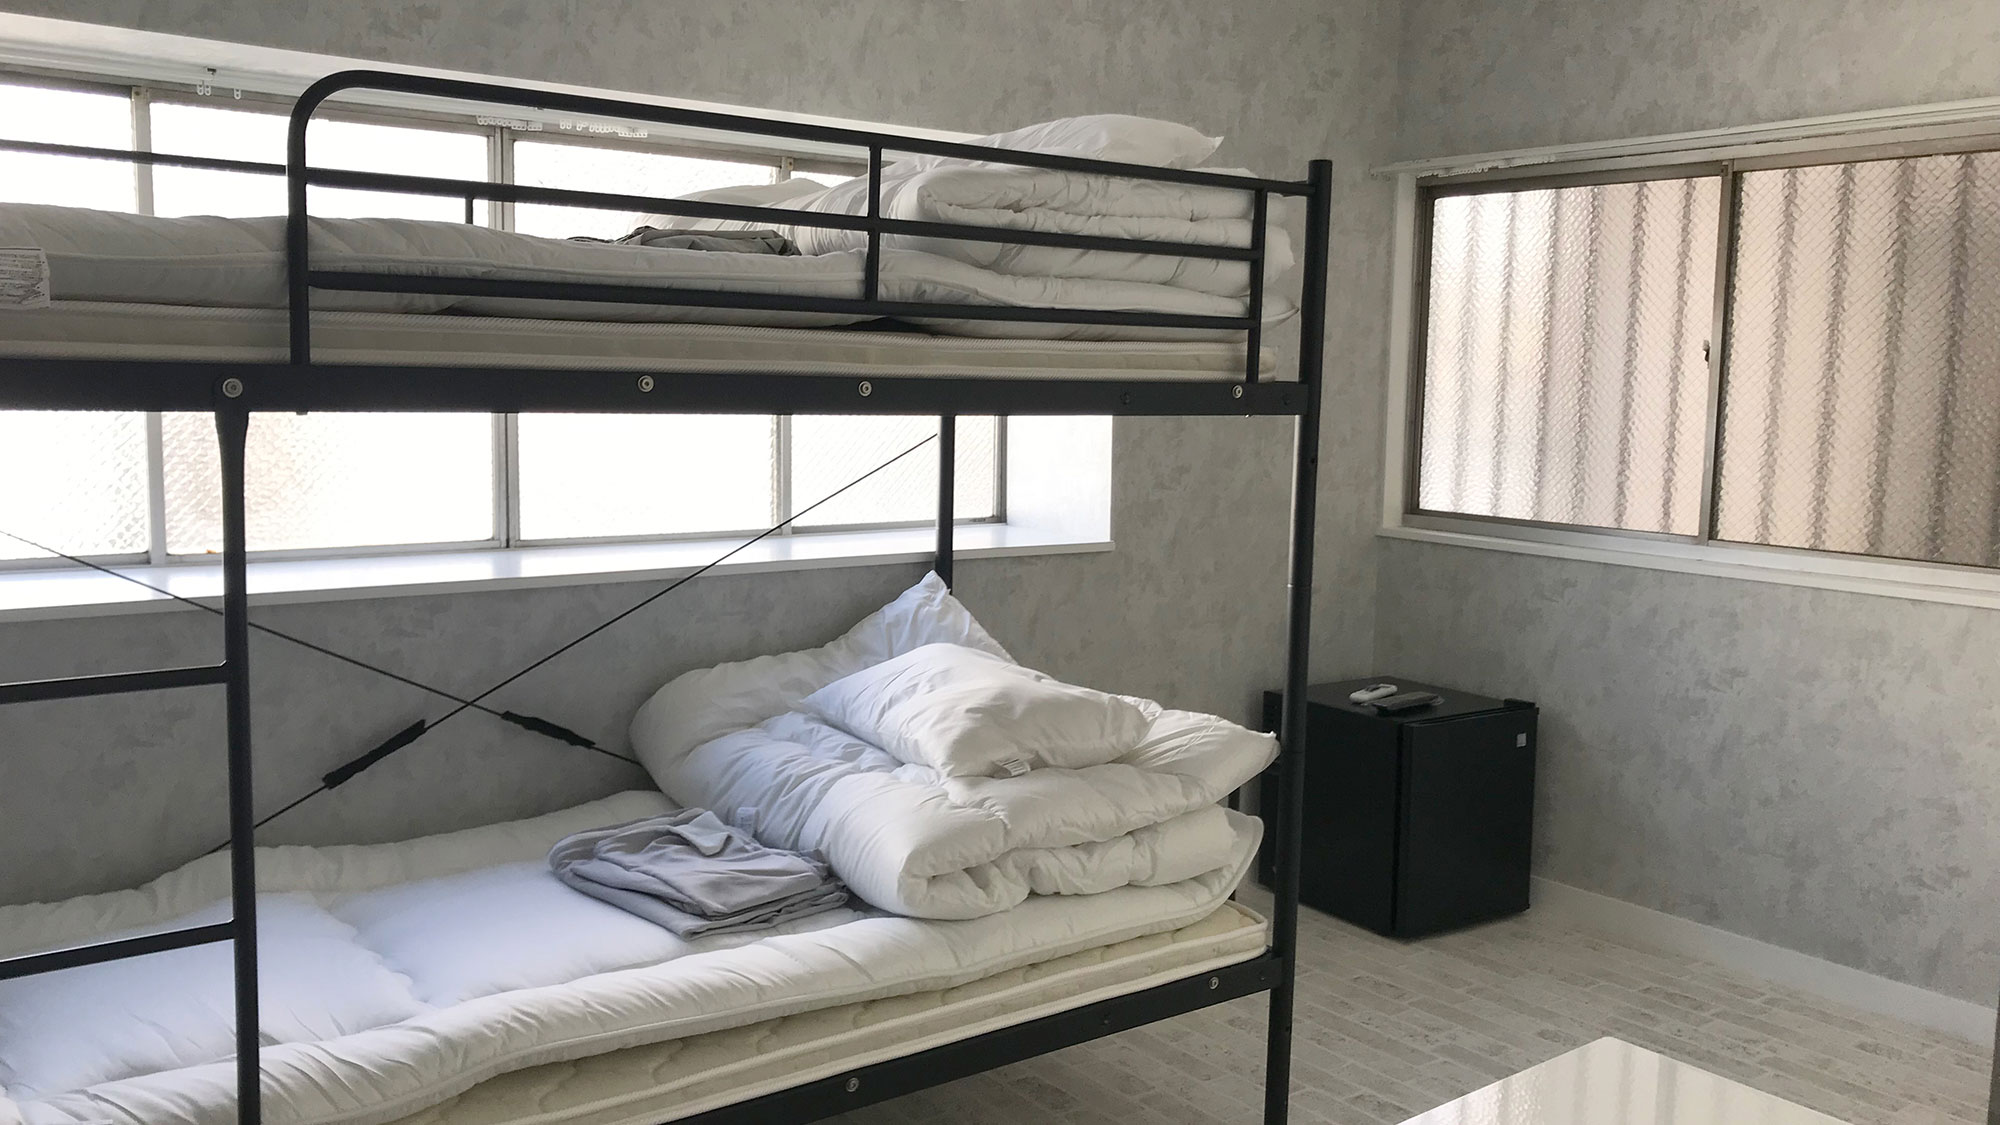 ・【OOBACOⅡ】二段ベッドを設置したお部屋